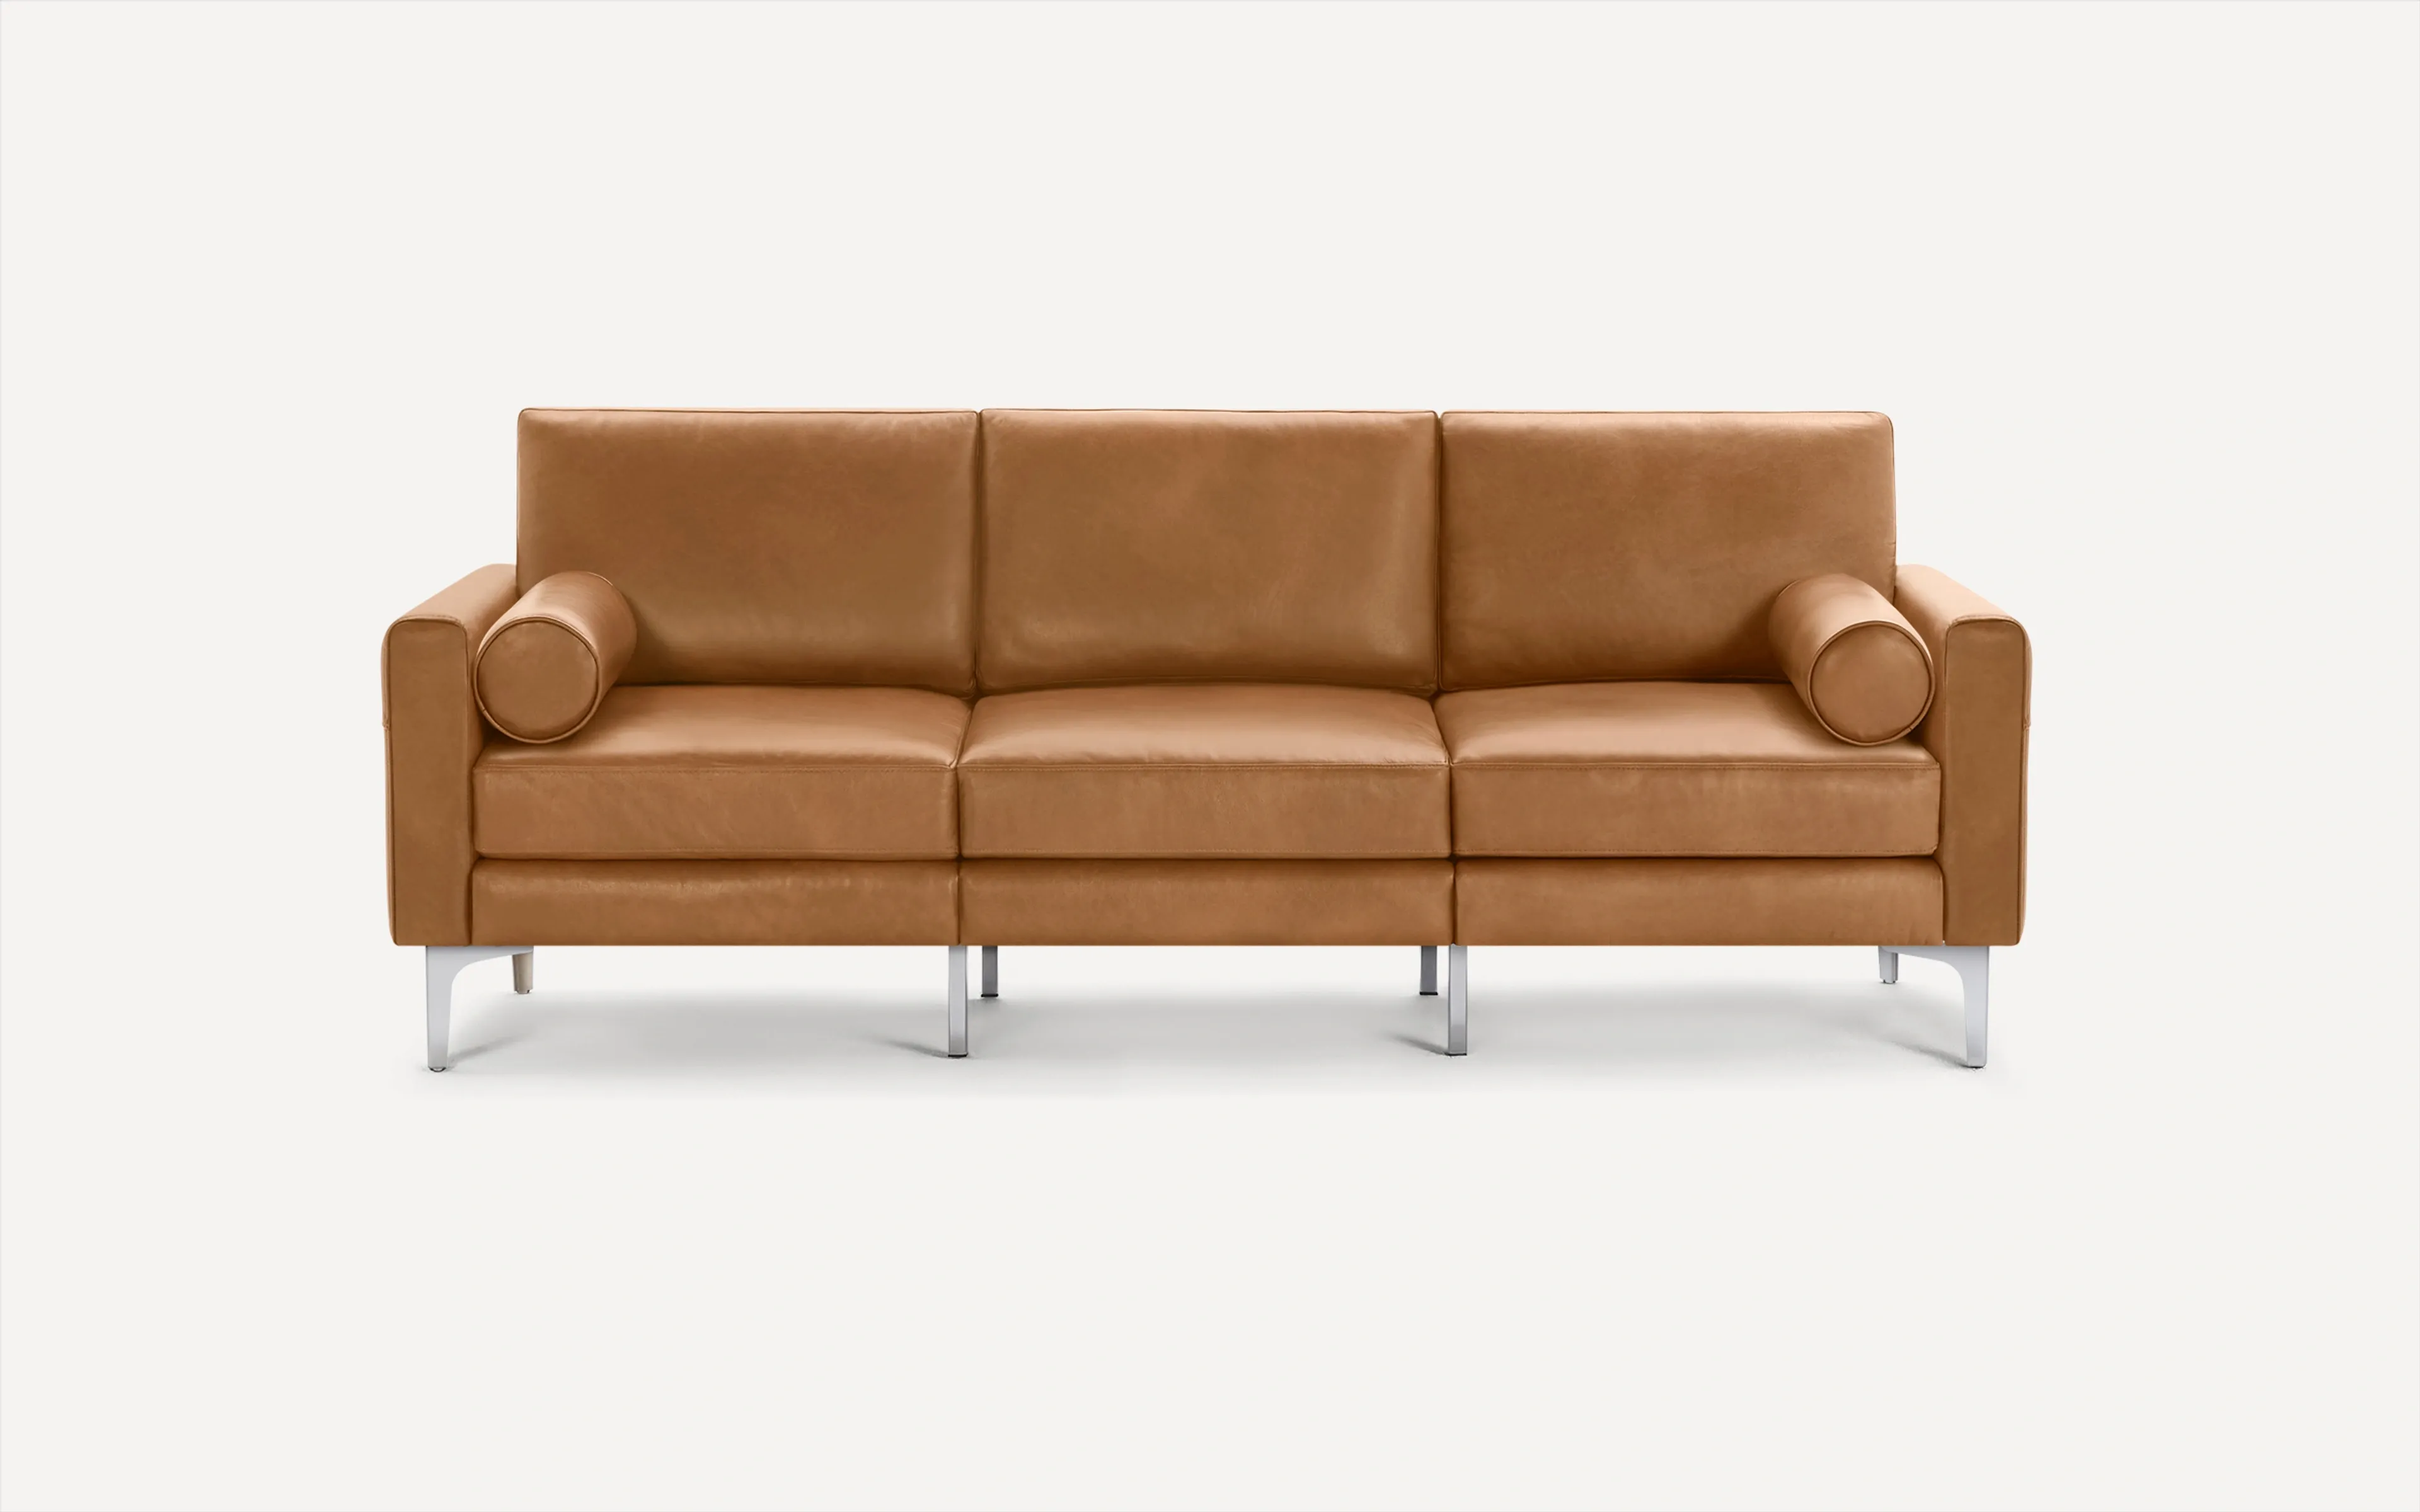 Original Nomad Sofa in Camel Leather